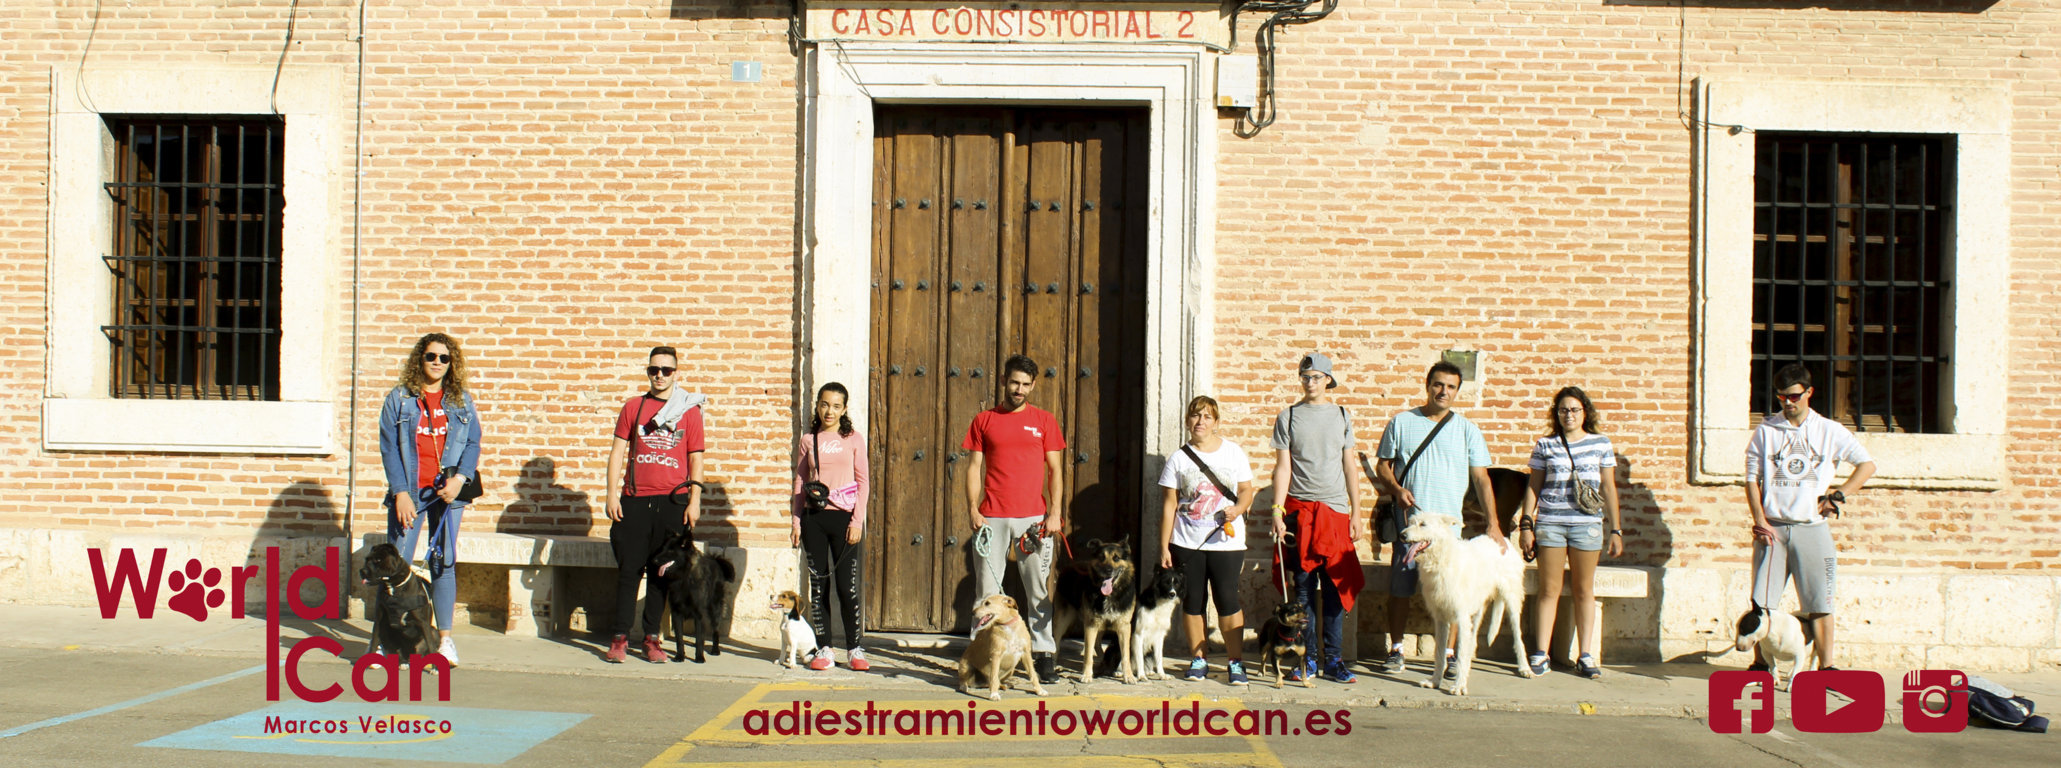 adiestramiento canino en valladolid, adiestrado a domicilio en Valladolid, Cursos canino en Valladolid, Adiestra Perros en Valladolid, Perros en valladolid, cursos para perros